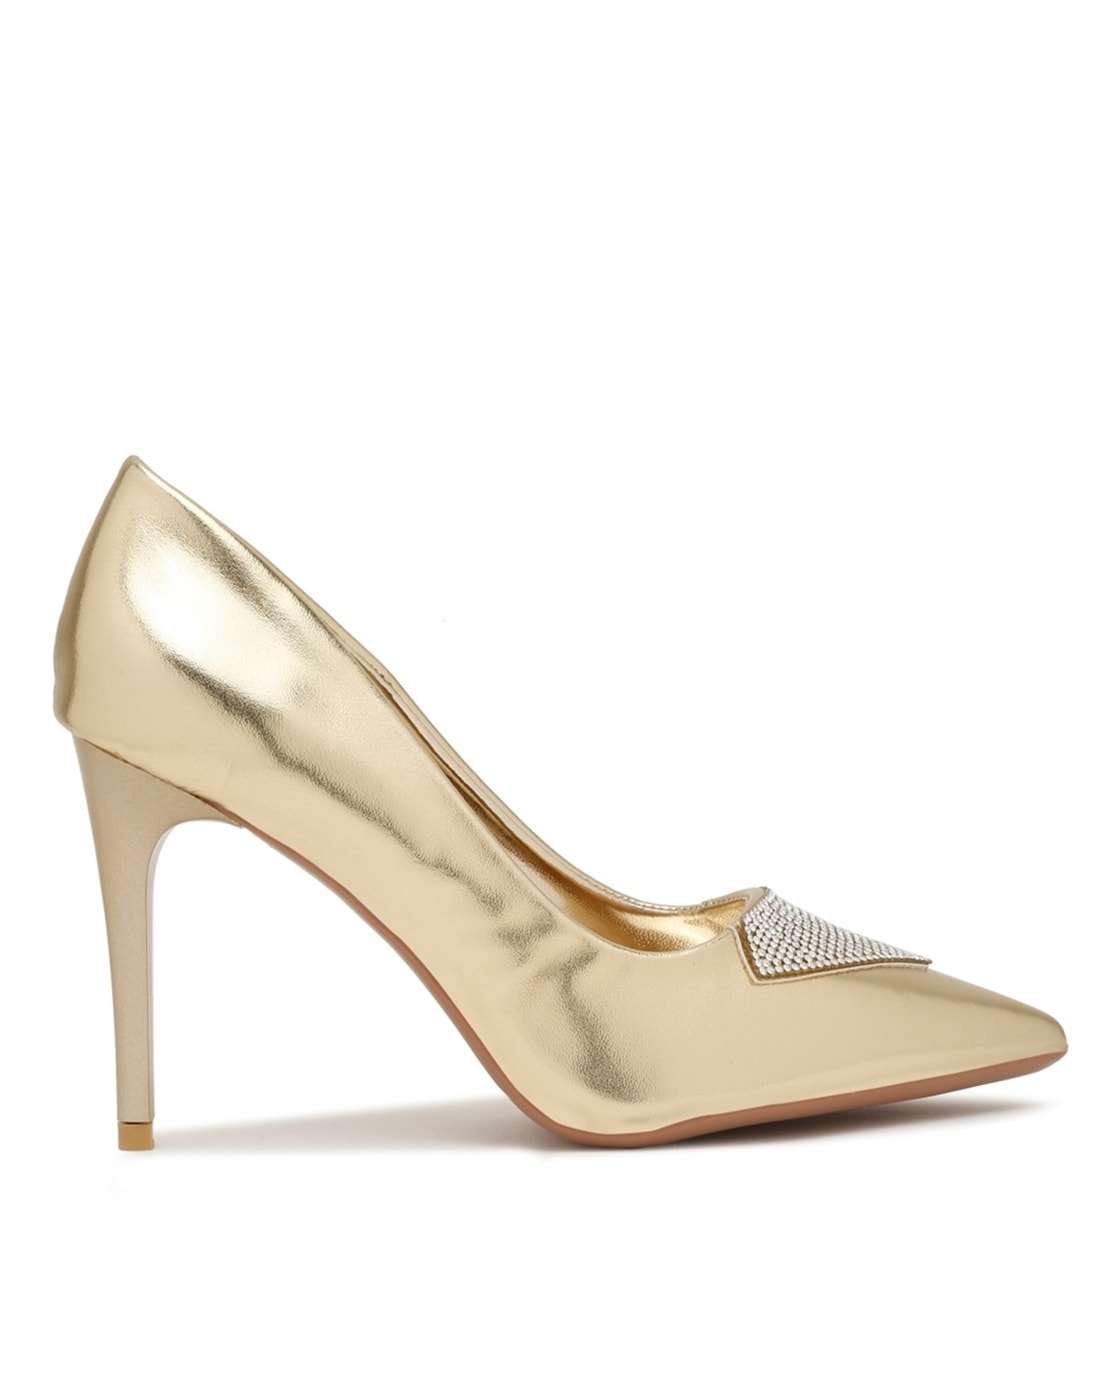 ALEXANDER MCQUEEN * Stunning high heels gold sequin platform shoes - pumps  EU 40 | eBay